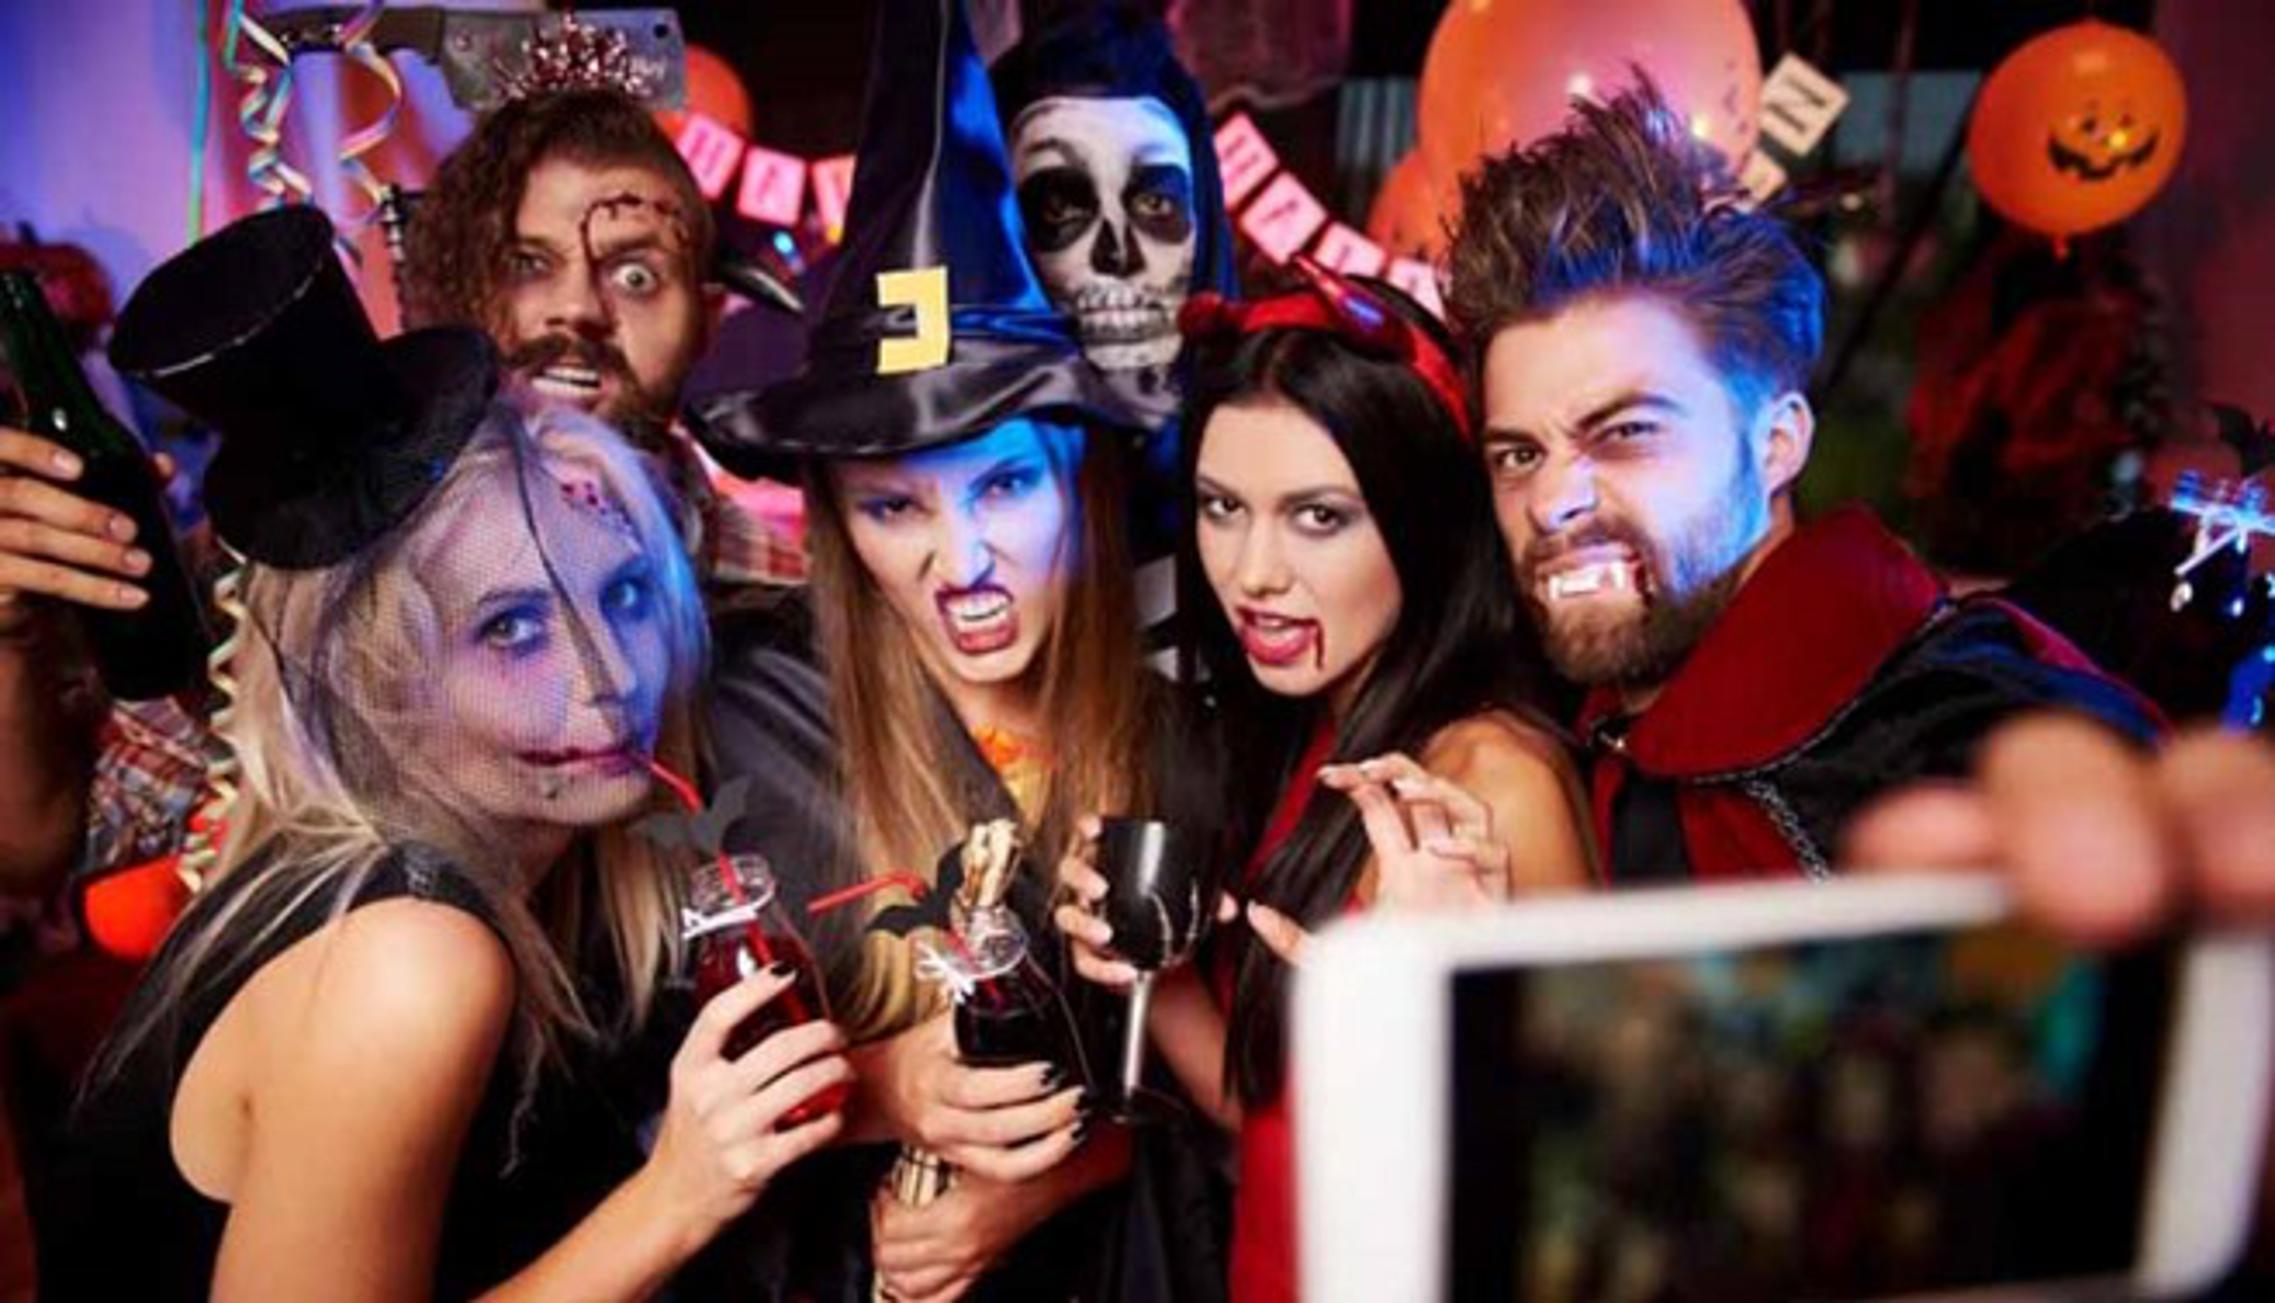 Halloween partyji obilježit će ovotjedna društvena događanja u Slavonskom Brodu. (Ilustracija)